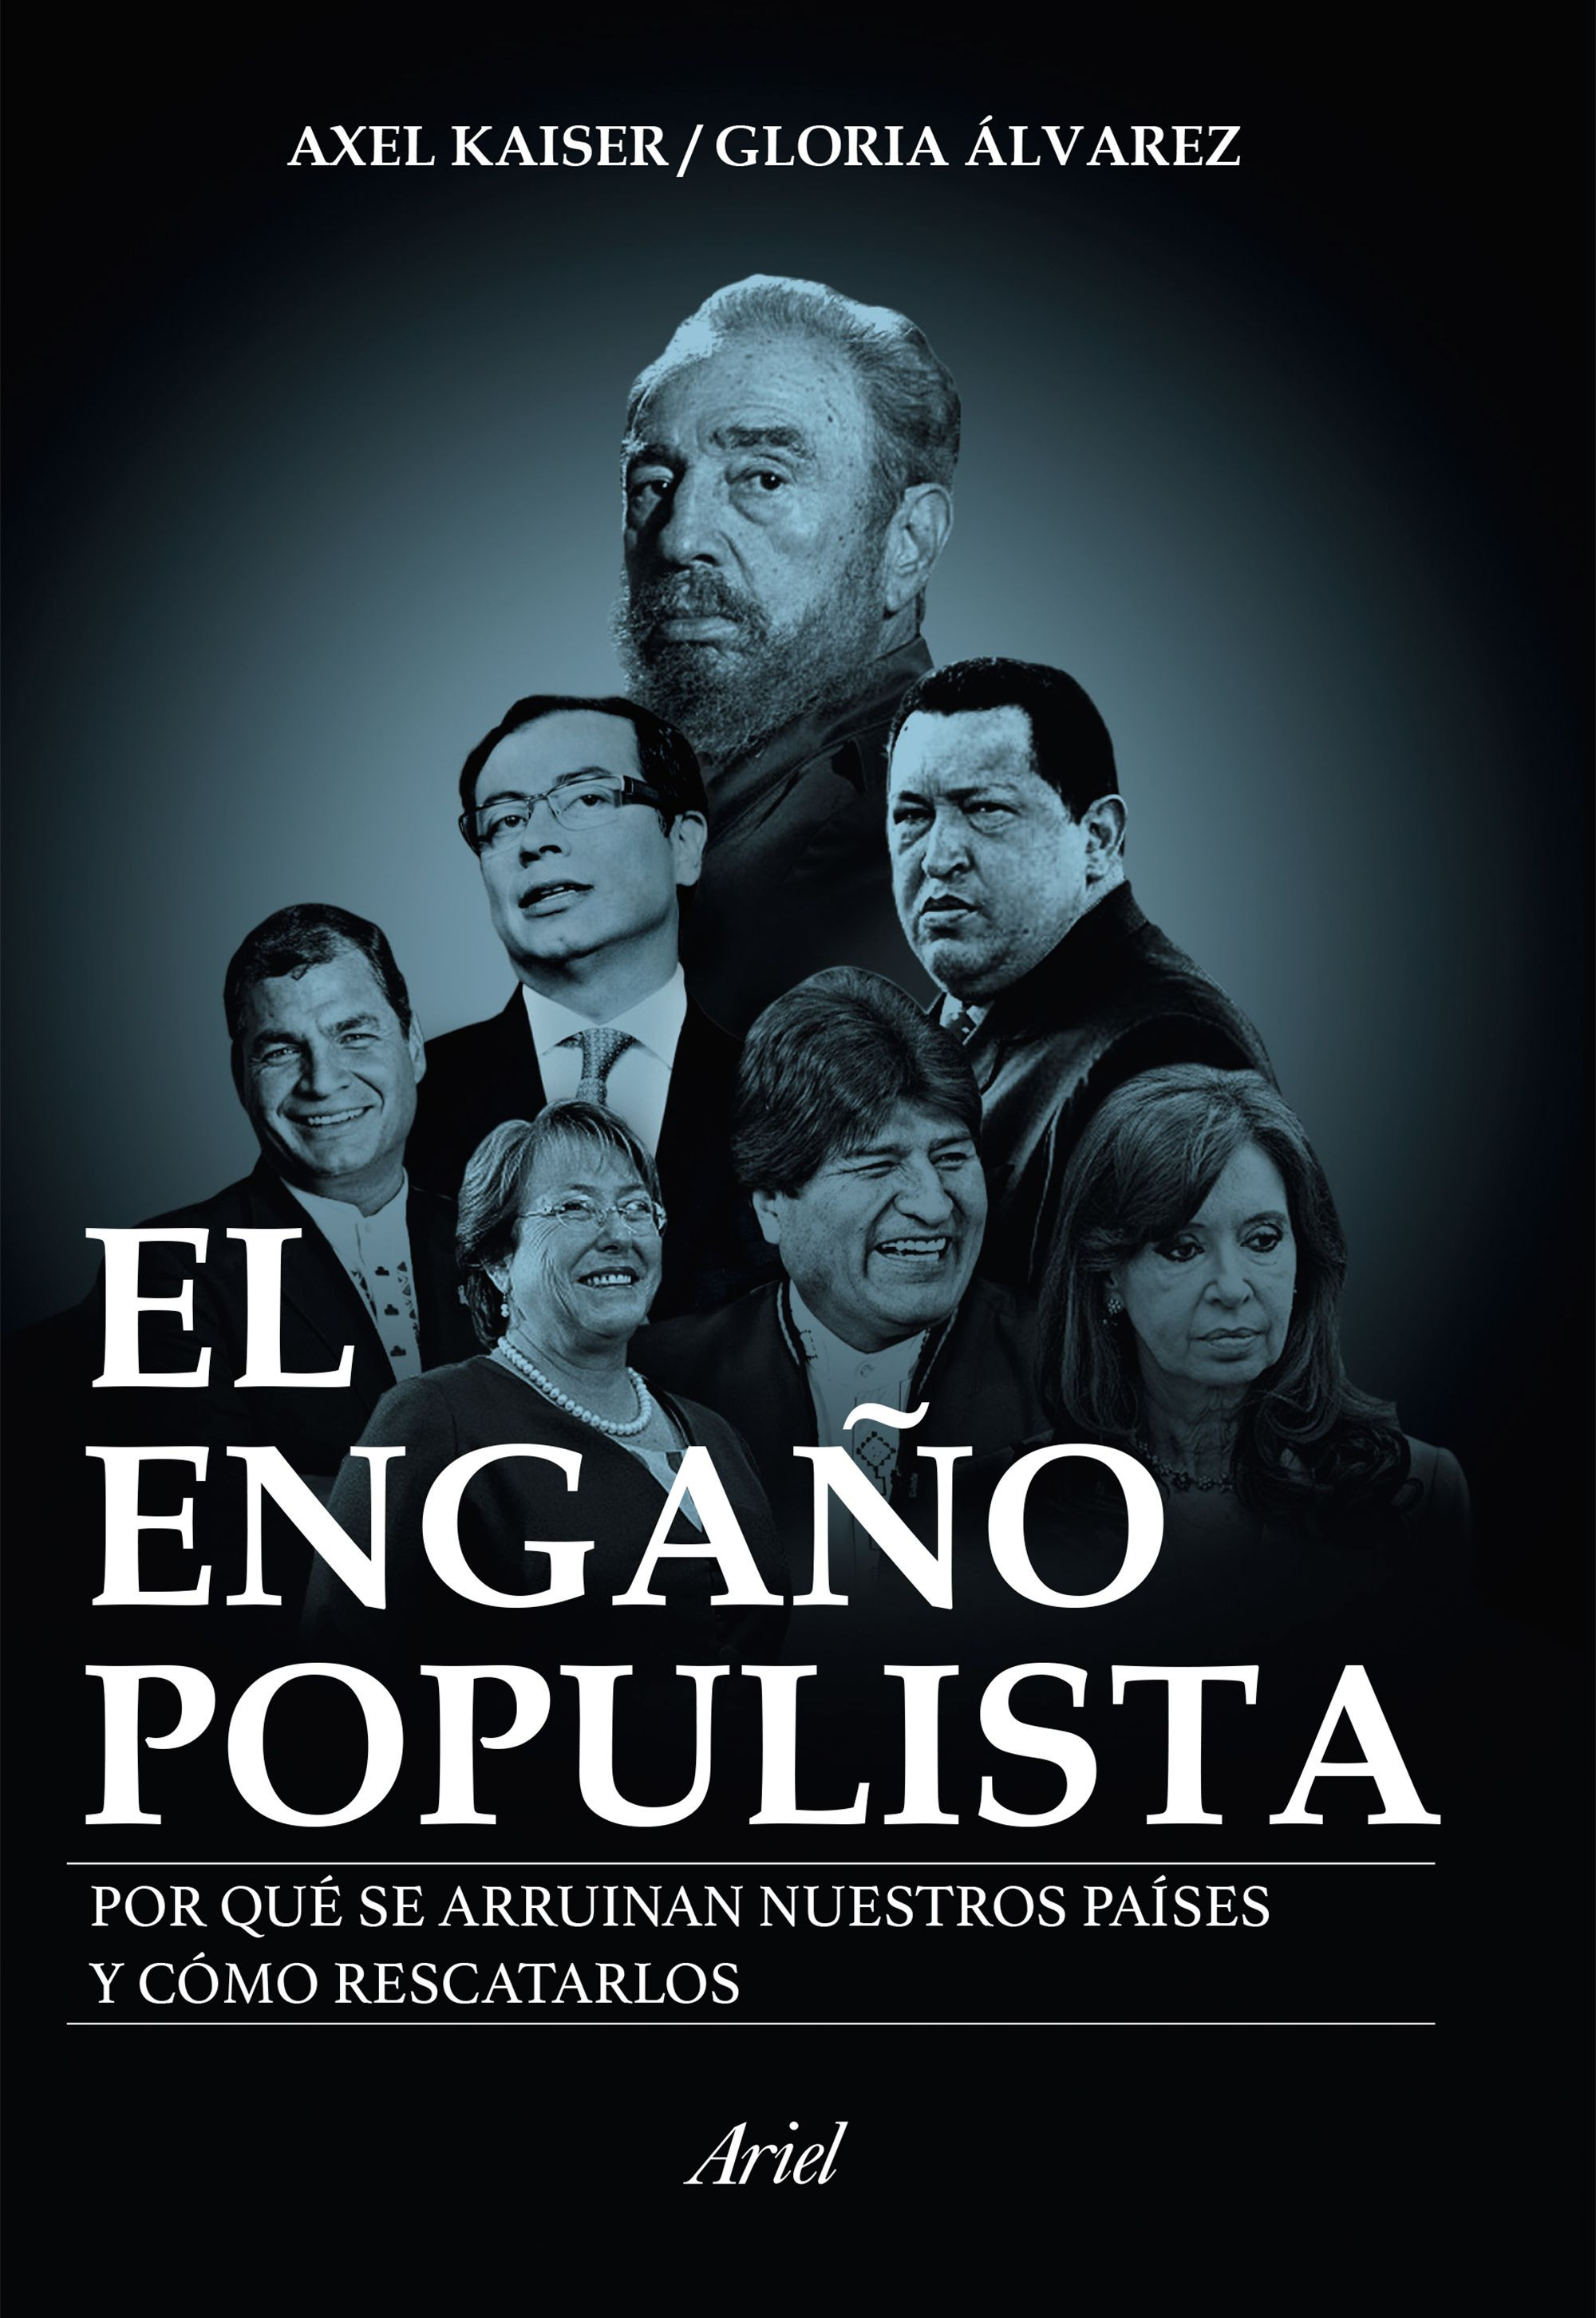 Imagen El engaño populista. Axel Kaiser-Gloria Álvarez 1